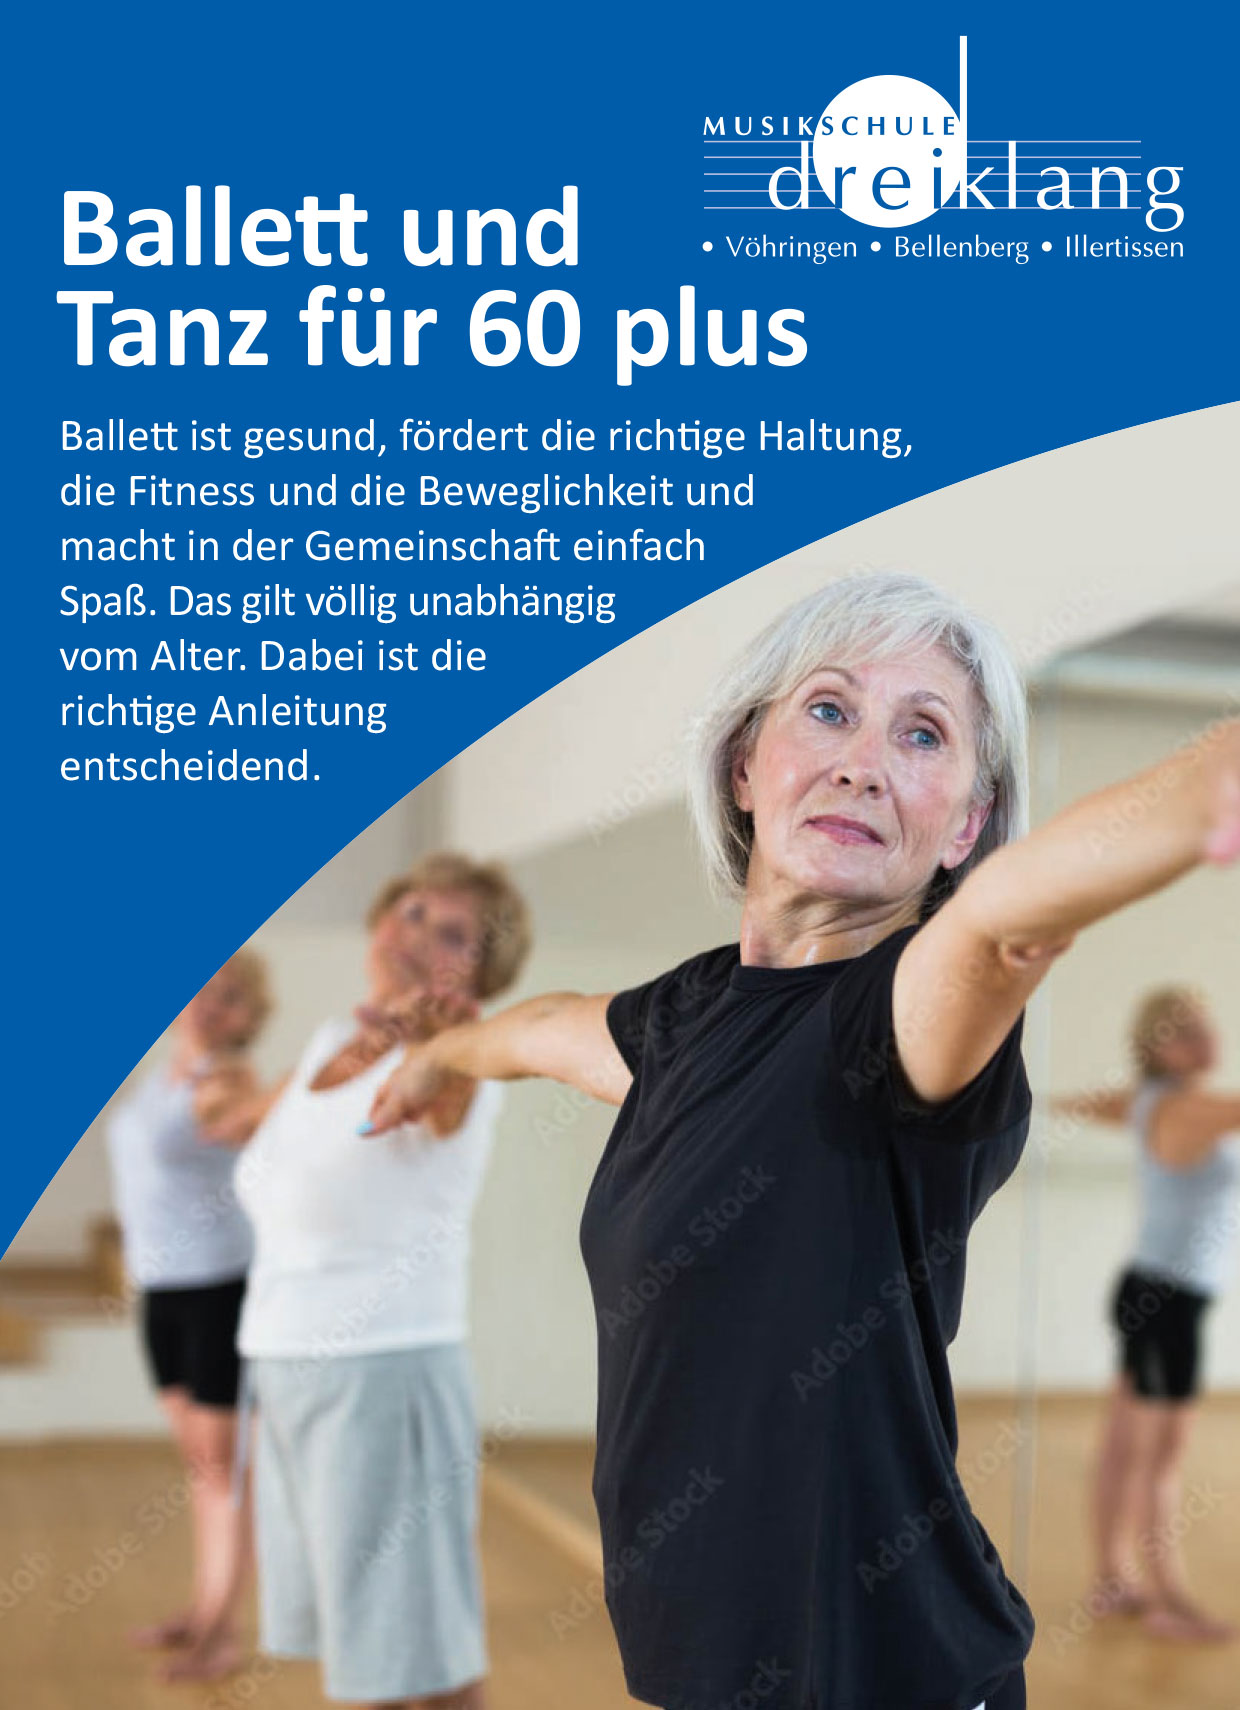 Musikschule Dreiklang Ballett und Tanz für 60 plus